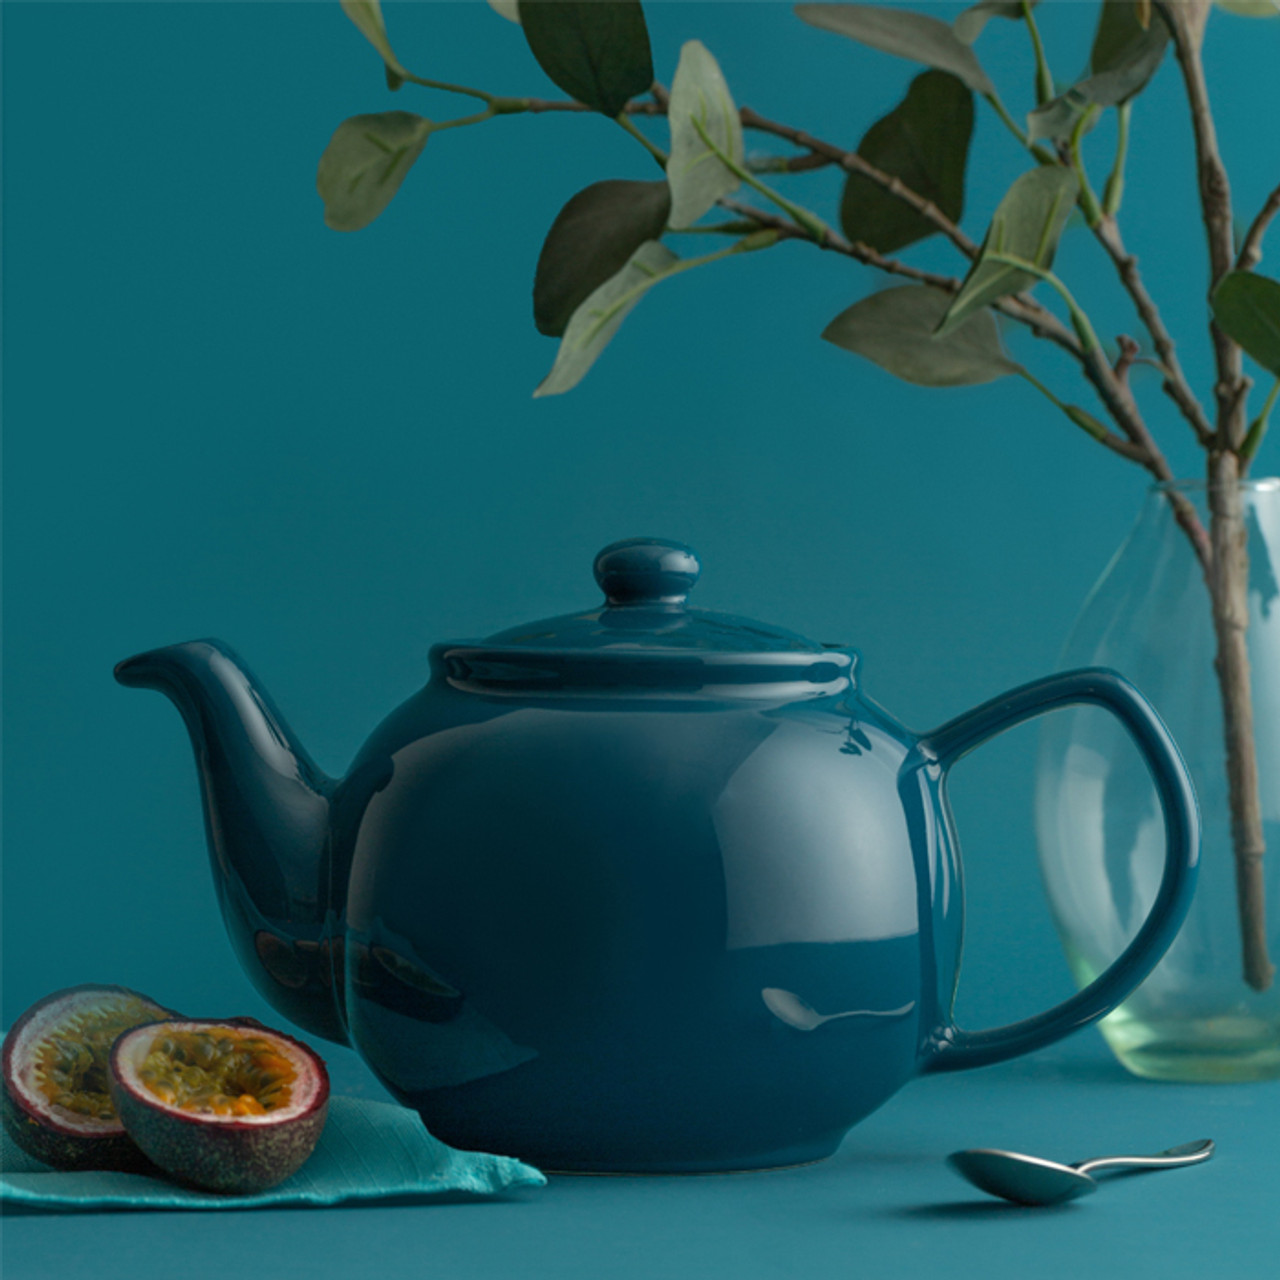 Teal 6 Cup Teapot